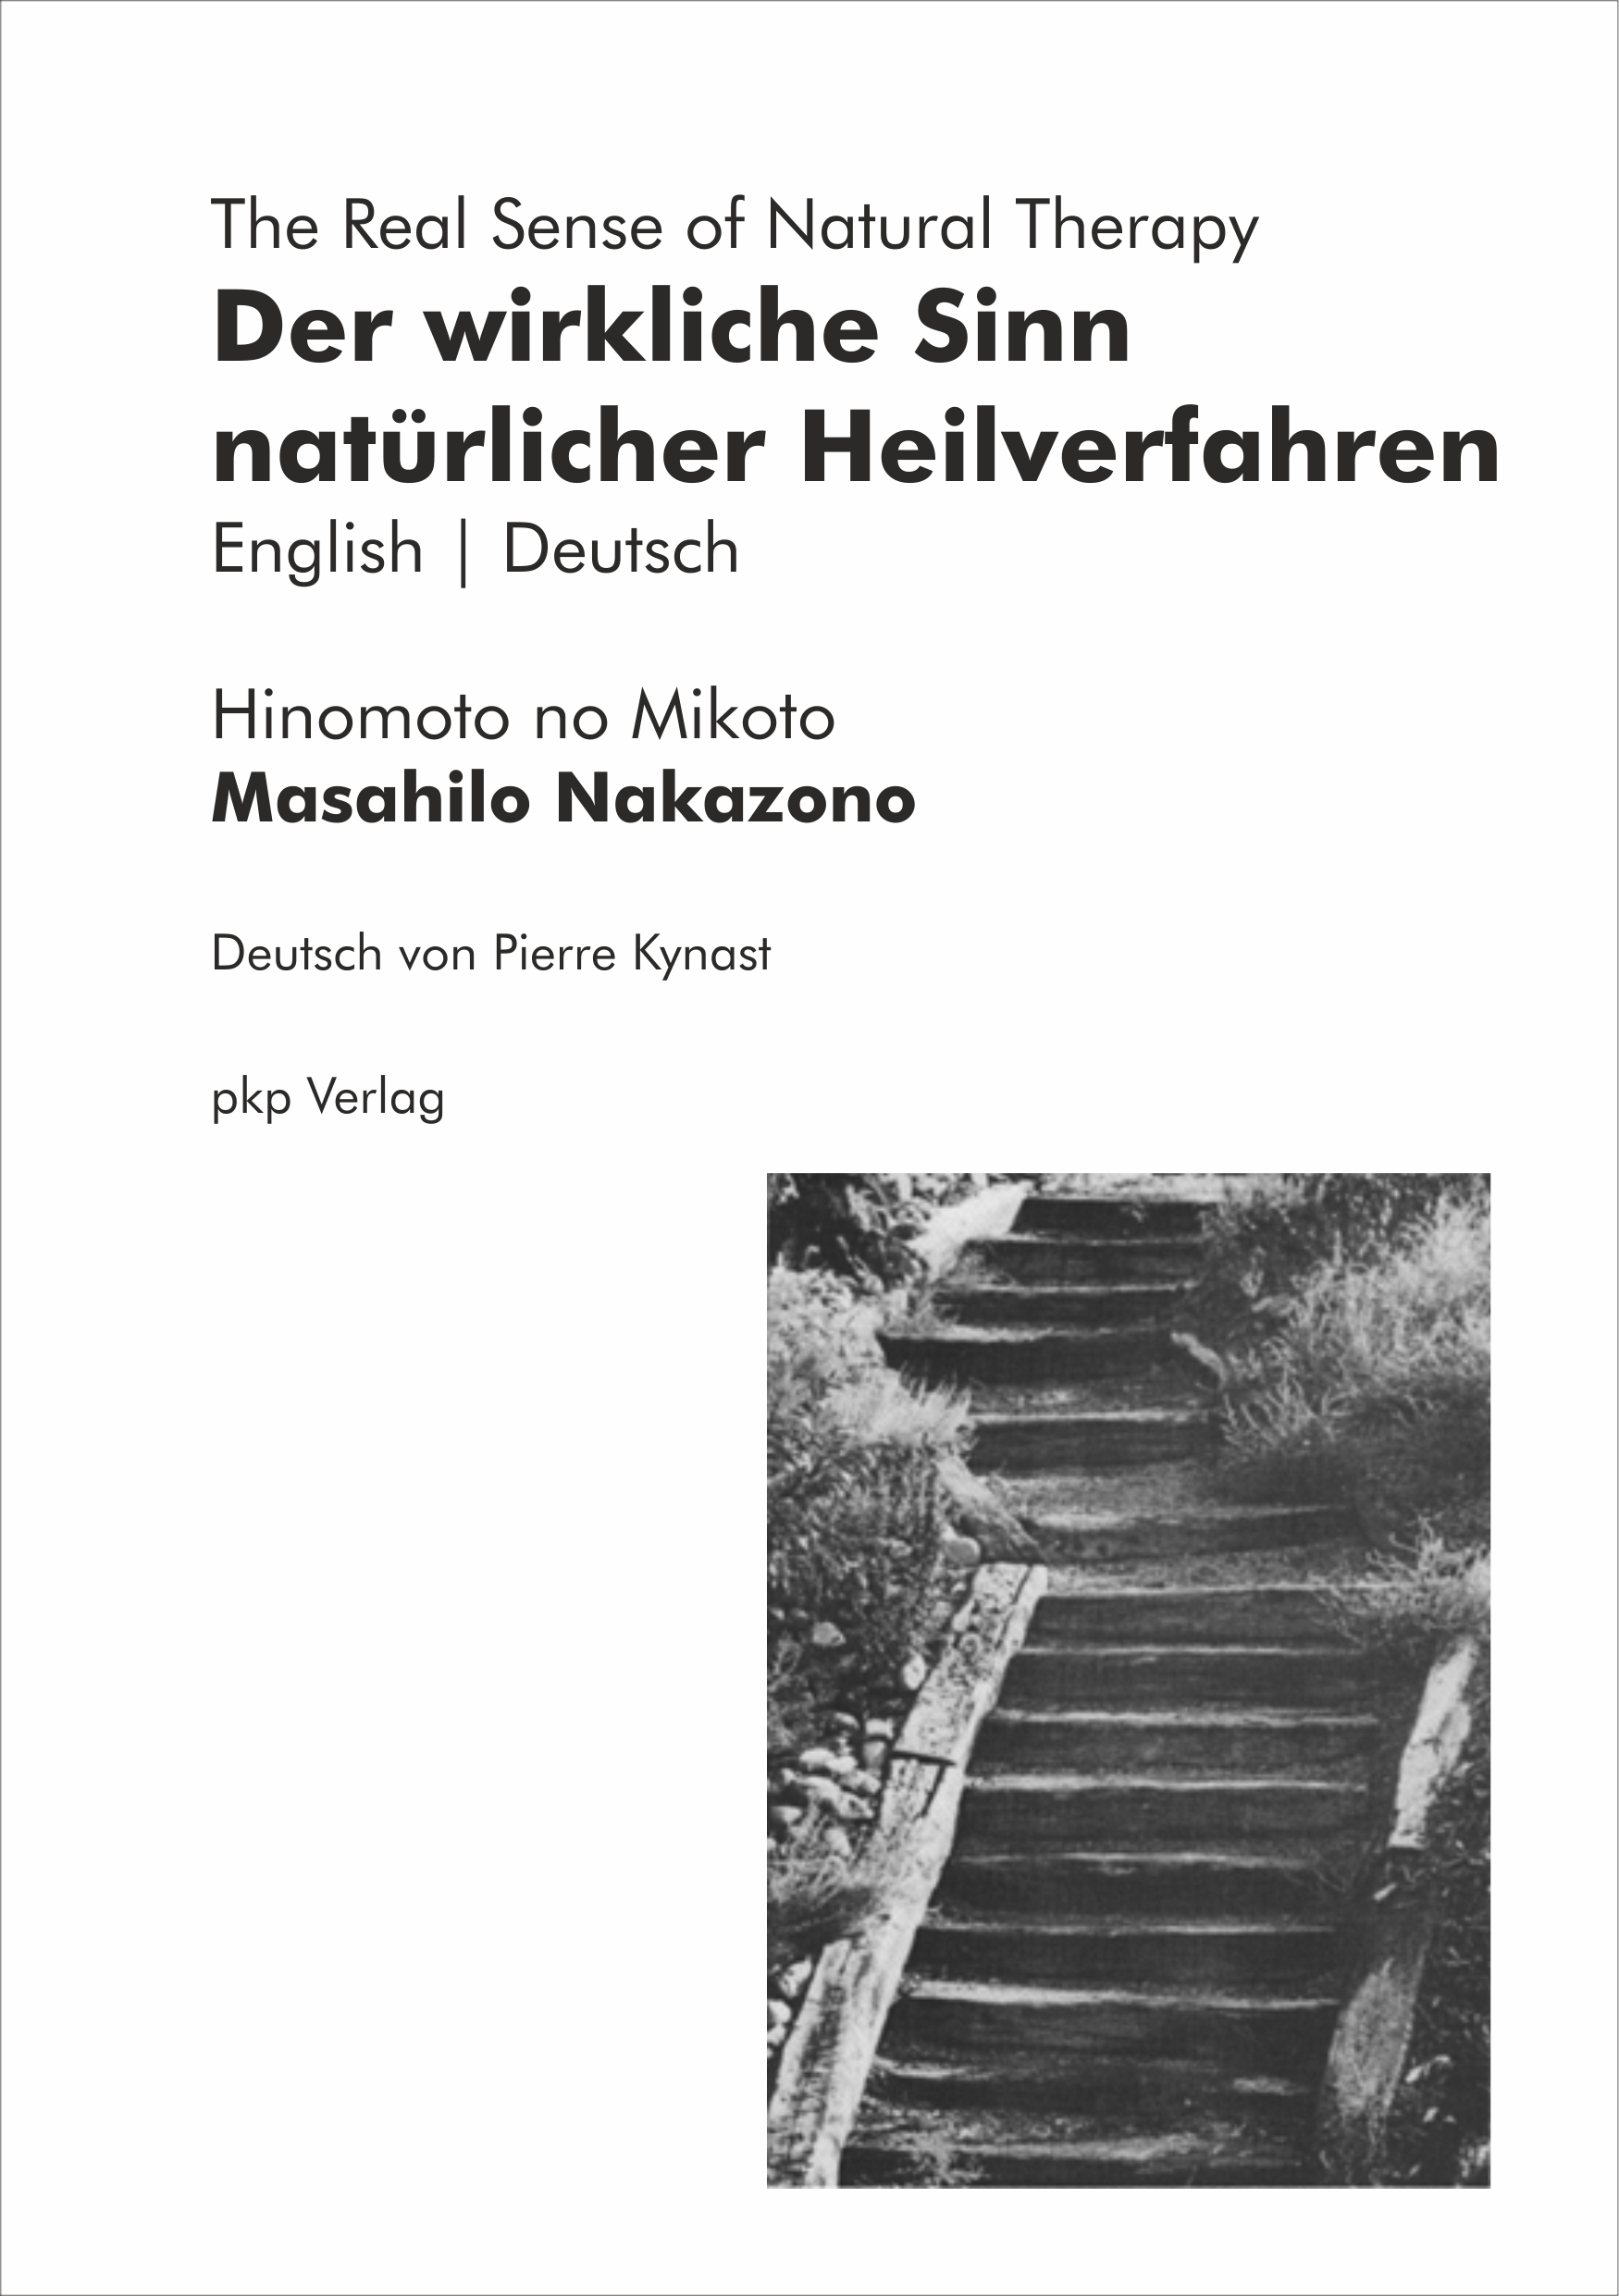 Der wirkliche Sinn natürlicher Heilverfahren - Mikoto Masahilo Nakazono - Eng-Deu